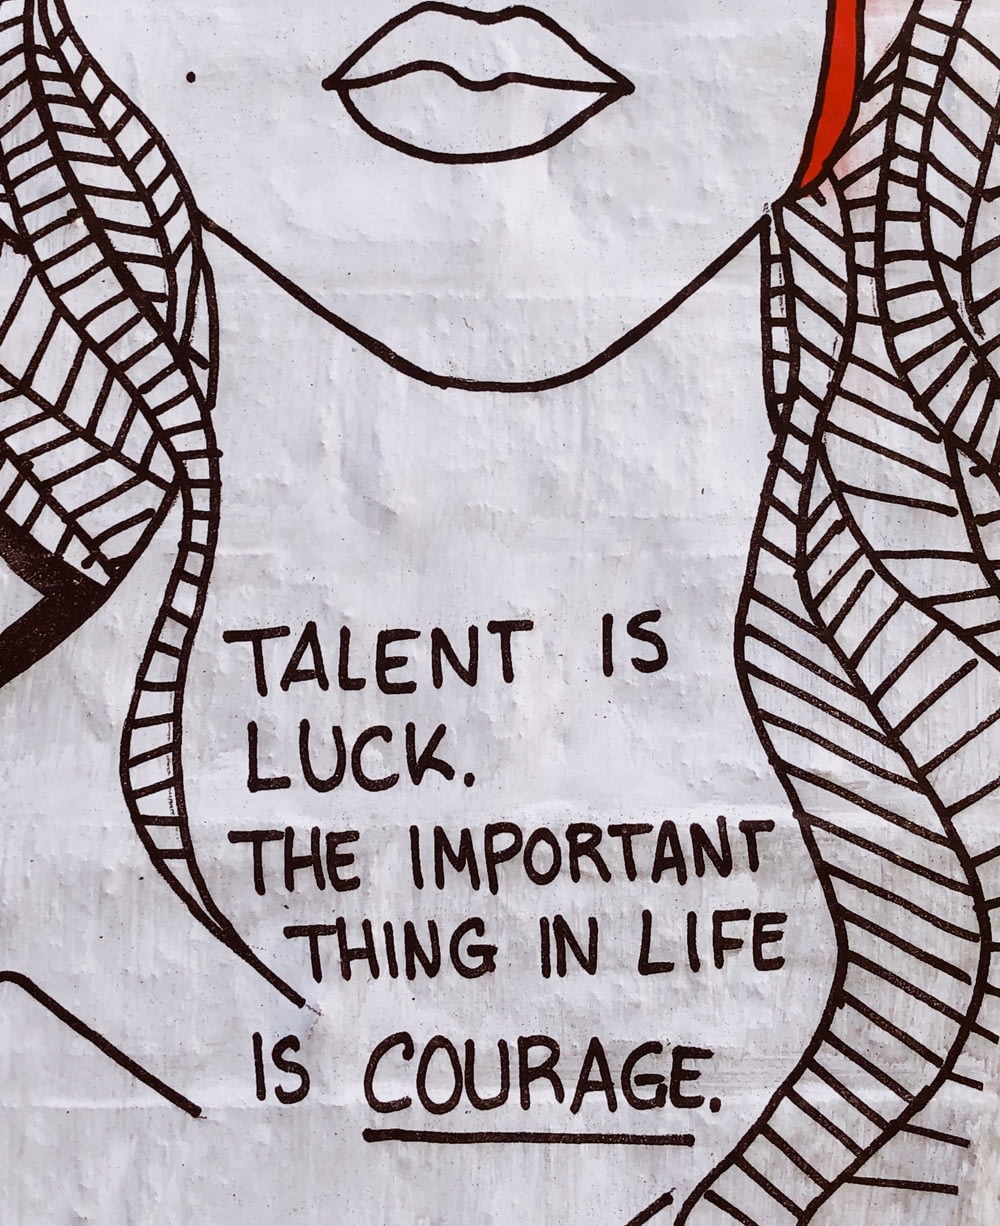 Le talent, c’est la chance, l’important dans la vie, c’est le courage